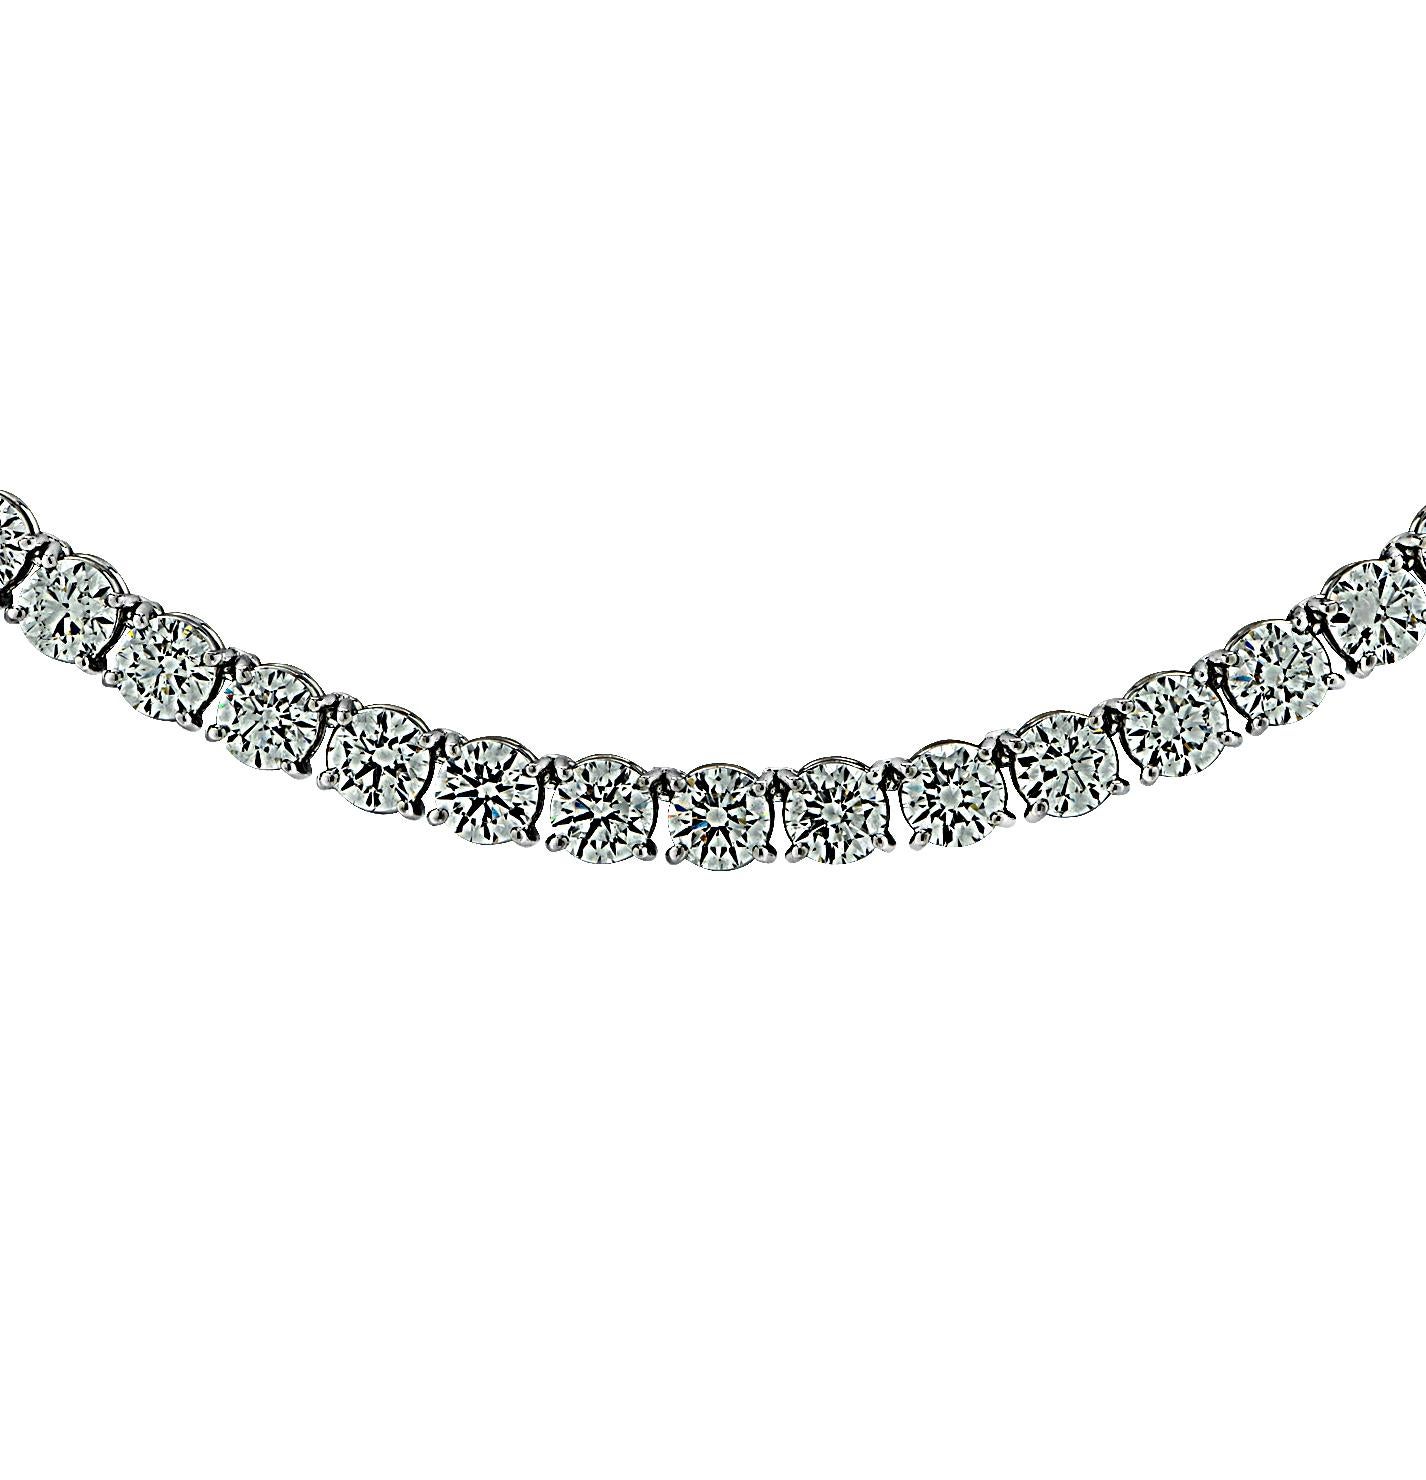 Exquis collier tennis en diamant Vivid Diamonds Straight Line réalisé en platine, mettant en valeur 107 diamants ronds de taille brillant pesant 28 carats, couleur D-E, pureté VS2-SI1. Chaque diamant a été soigneusement sélectionné, parfaitement